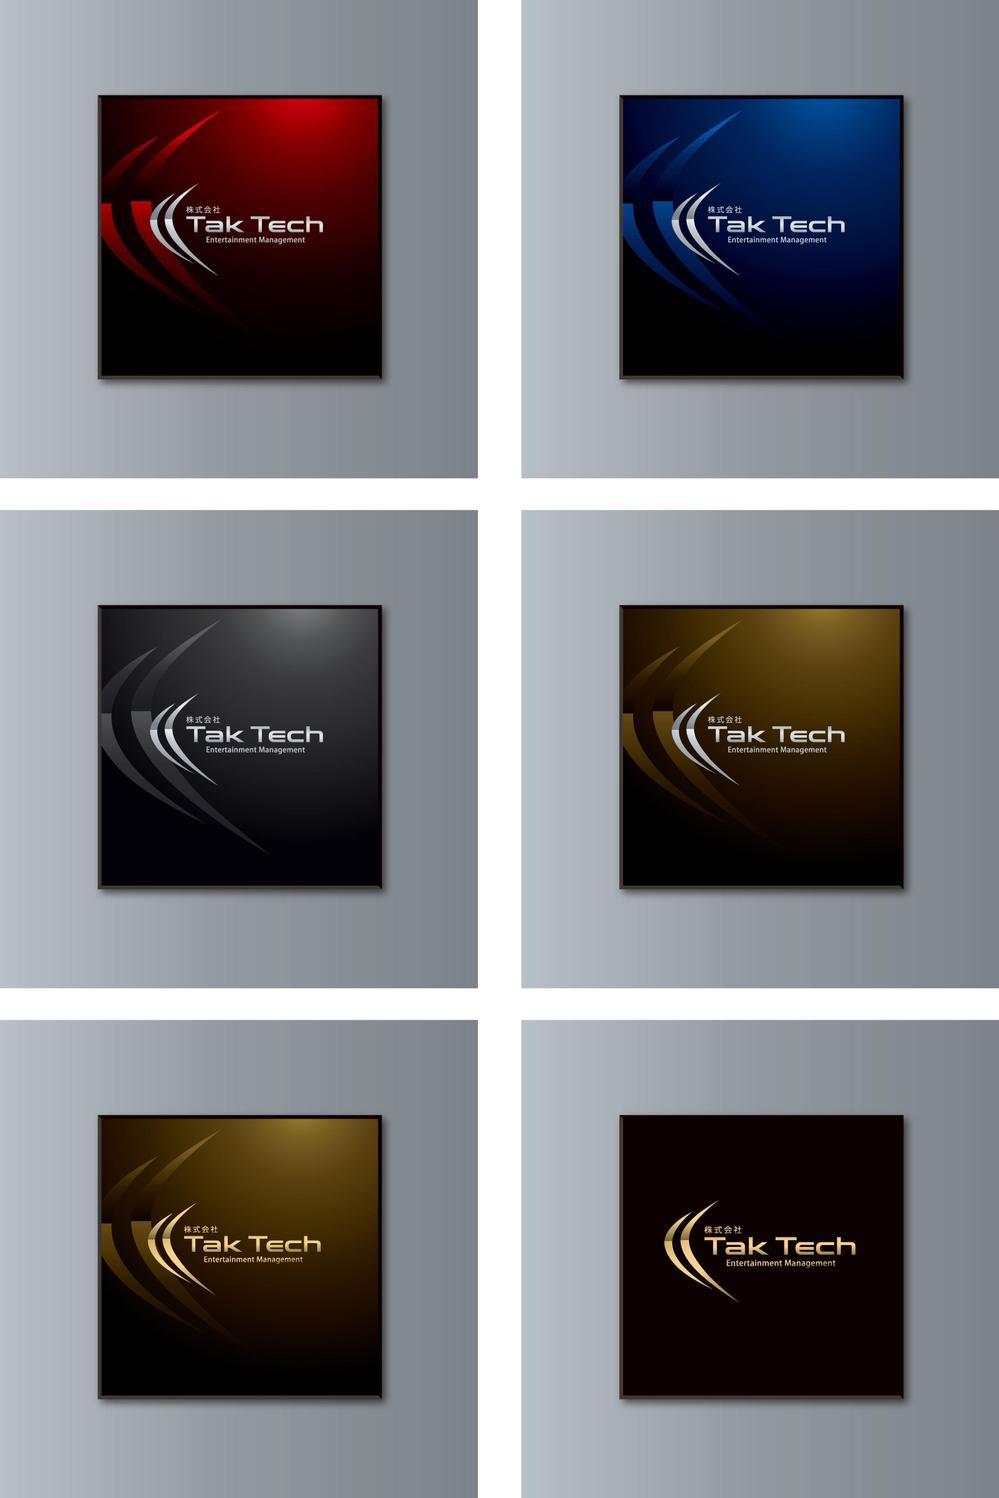 音楽スタジオ運営会社「Tak Tech」のロゴ